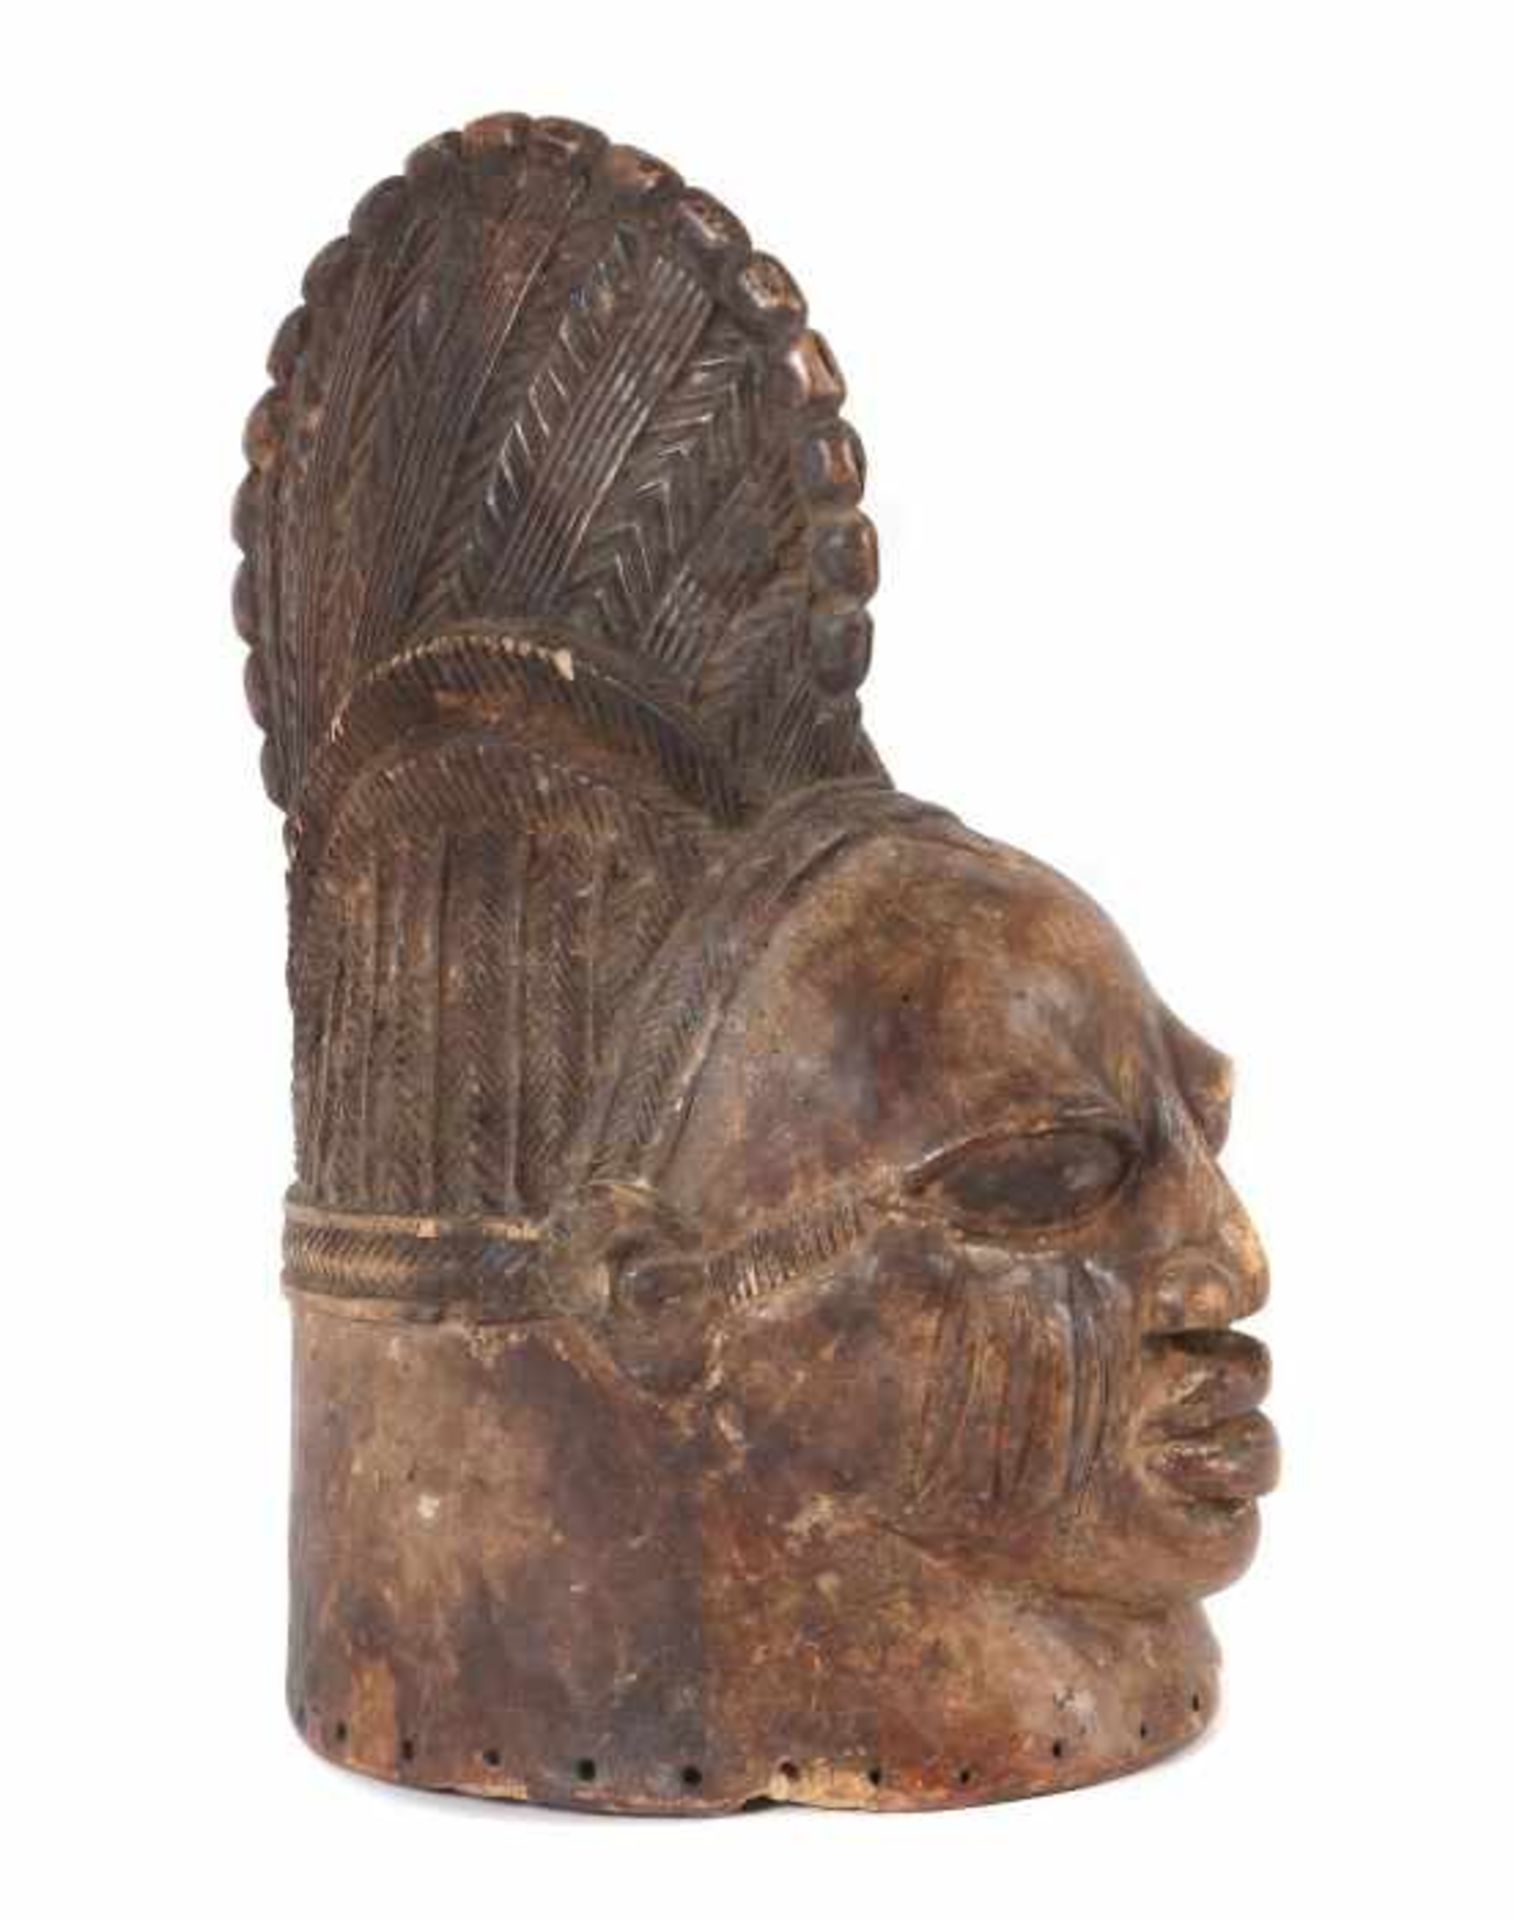 Helmmaske der YorubaNigeria, das ausdrucksstarke rotbraun eingefärbte Maskengesicht mit